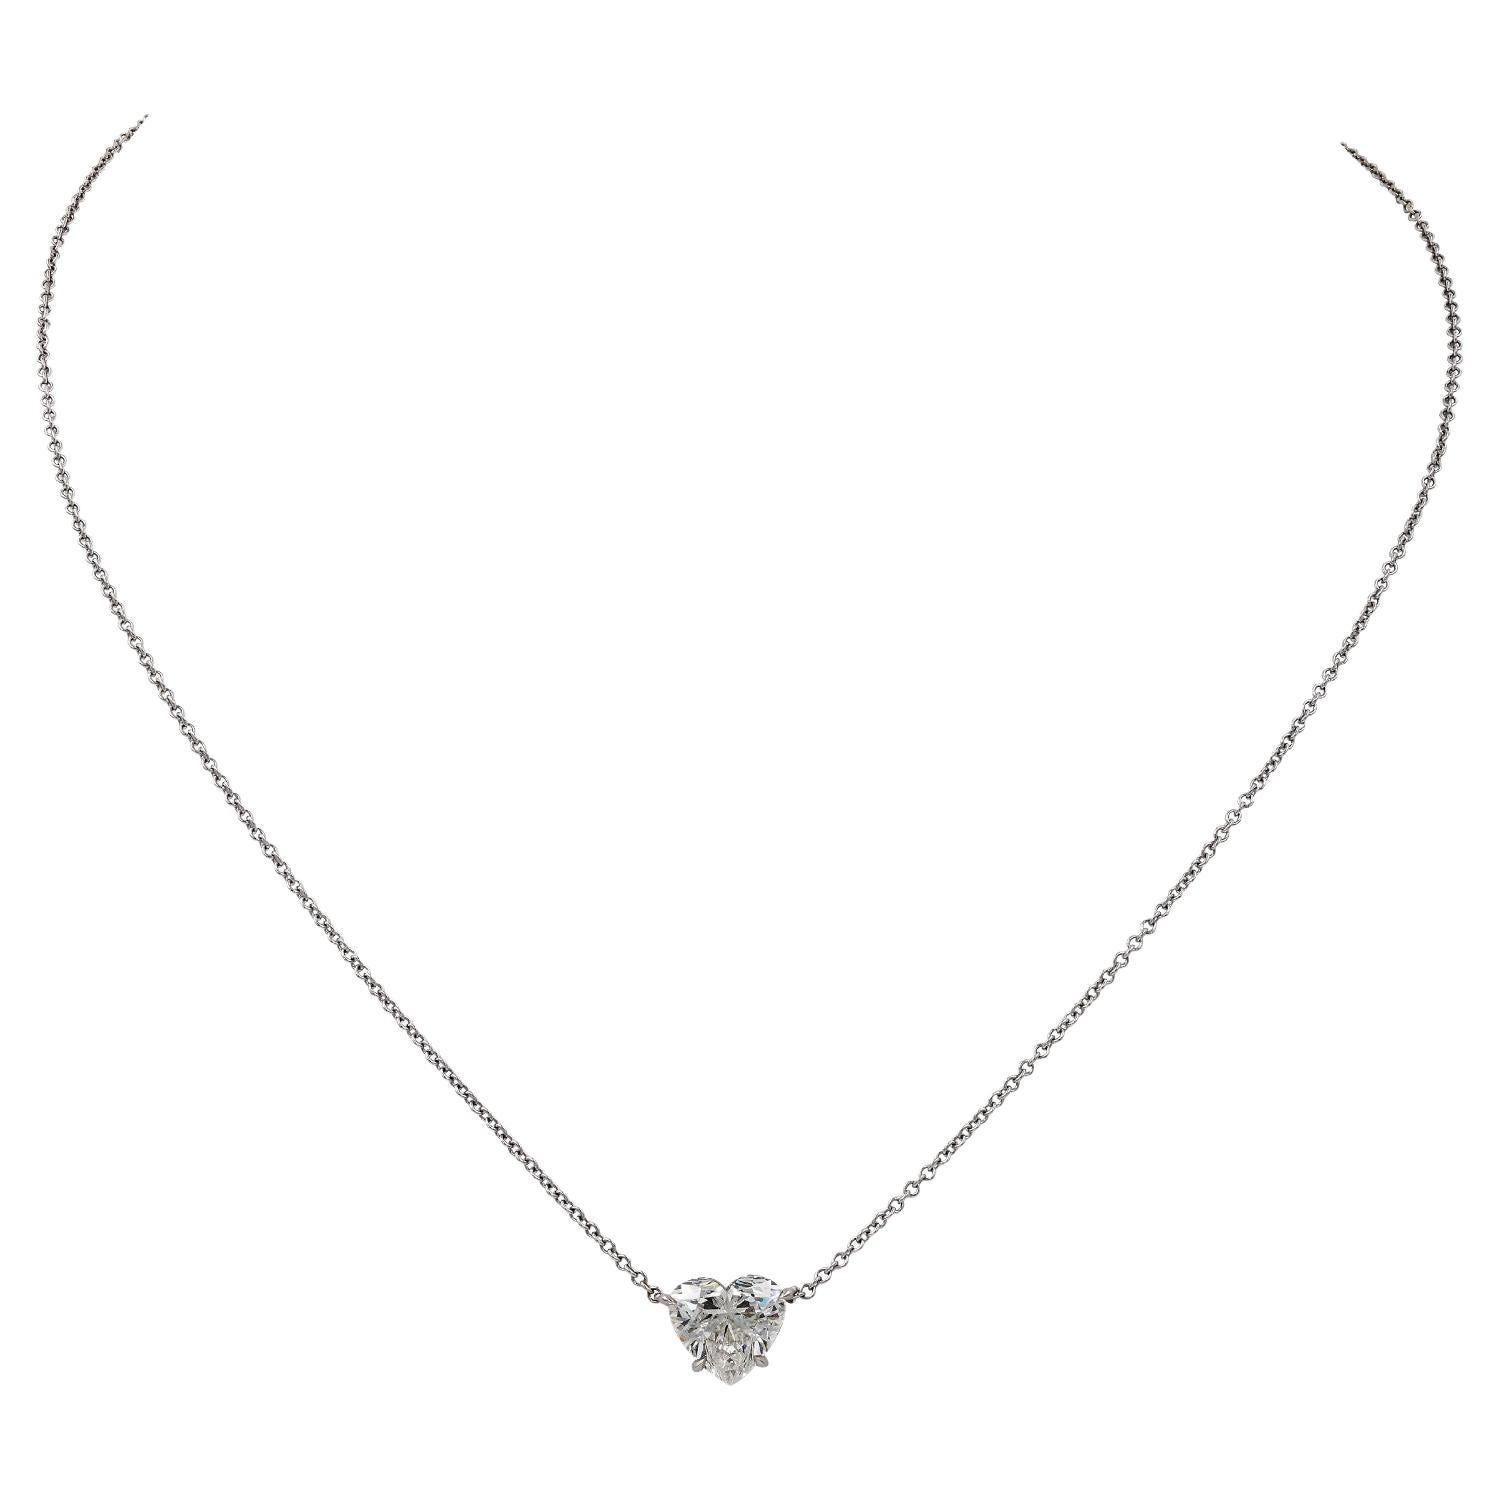 Spectra Fine Jewelry 2.11 Carat Heart-shape Diamond Pendant Necklace For Sale